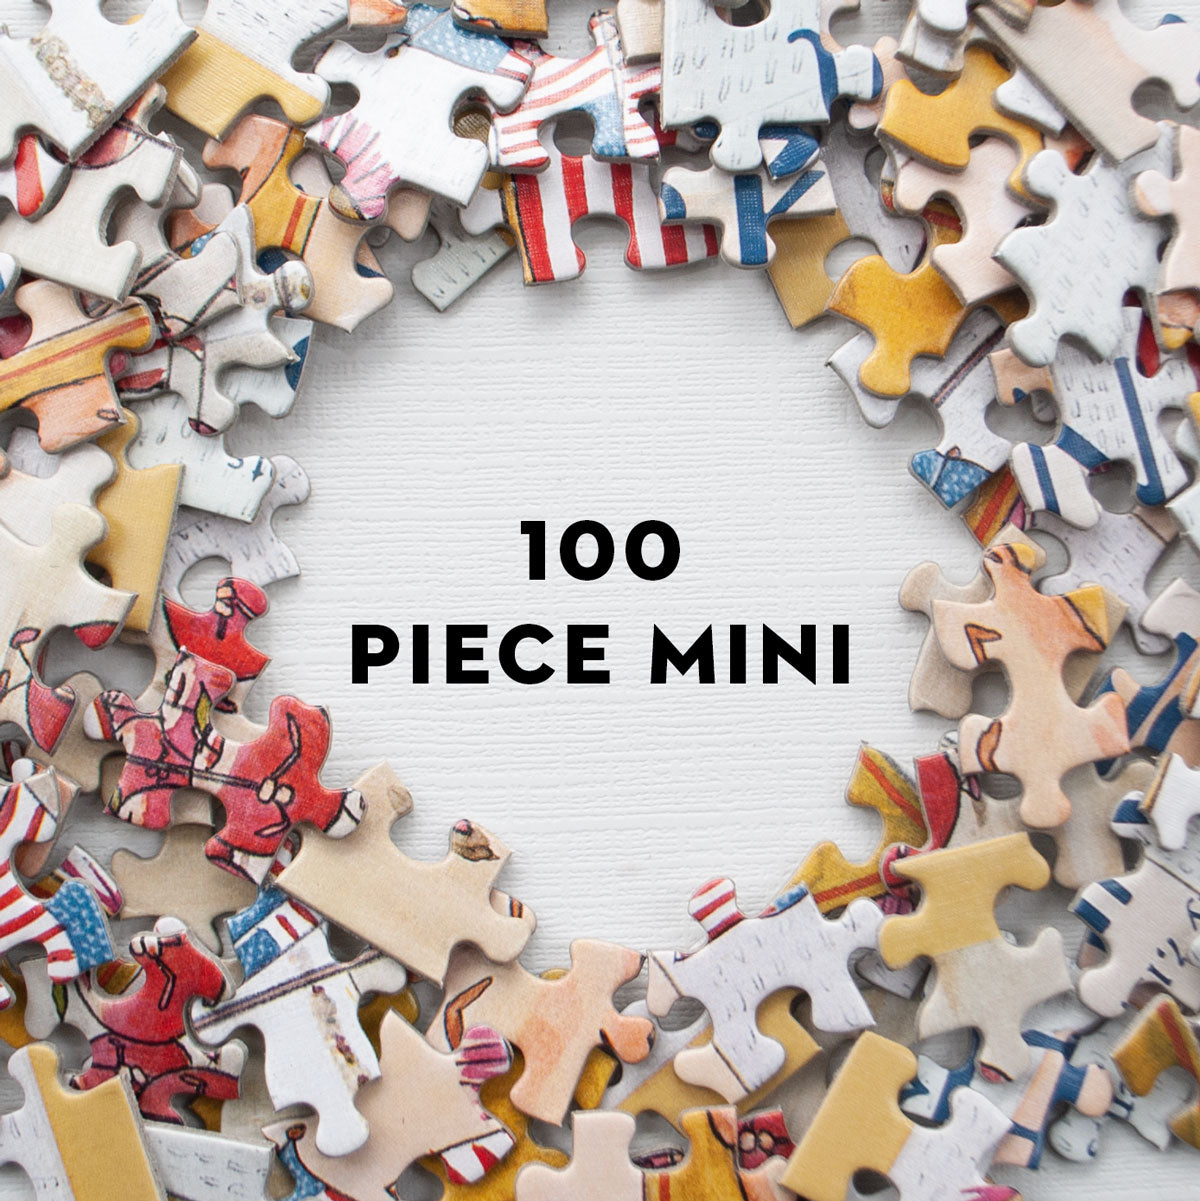 Puzzle 2000 pièces et plus - Rue des Puzzles